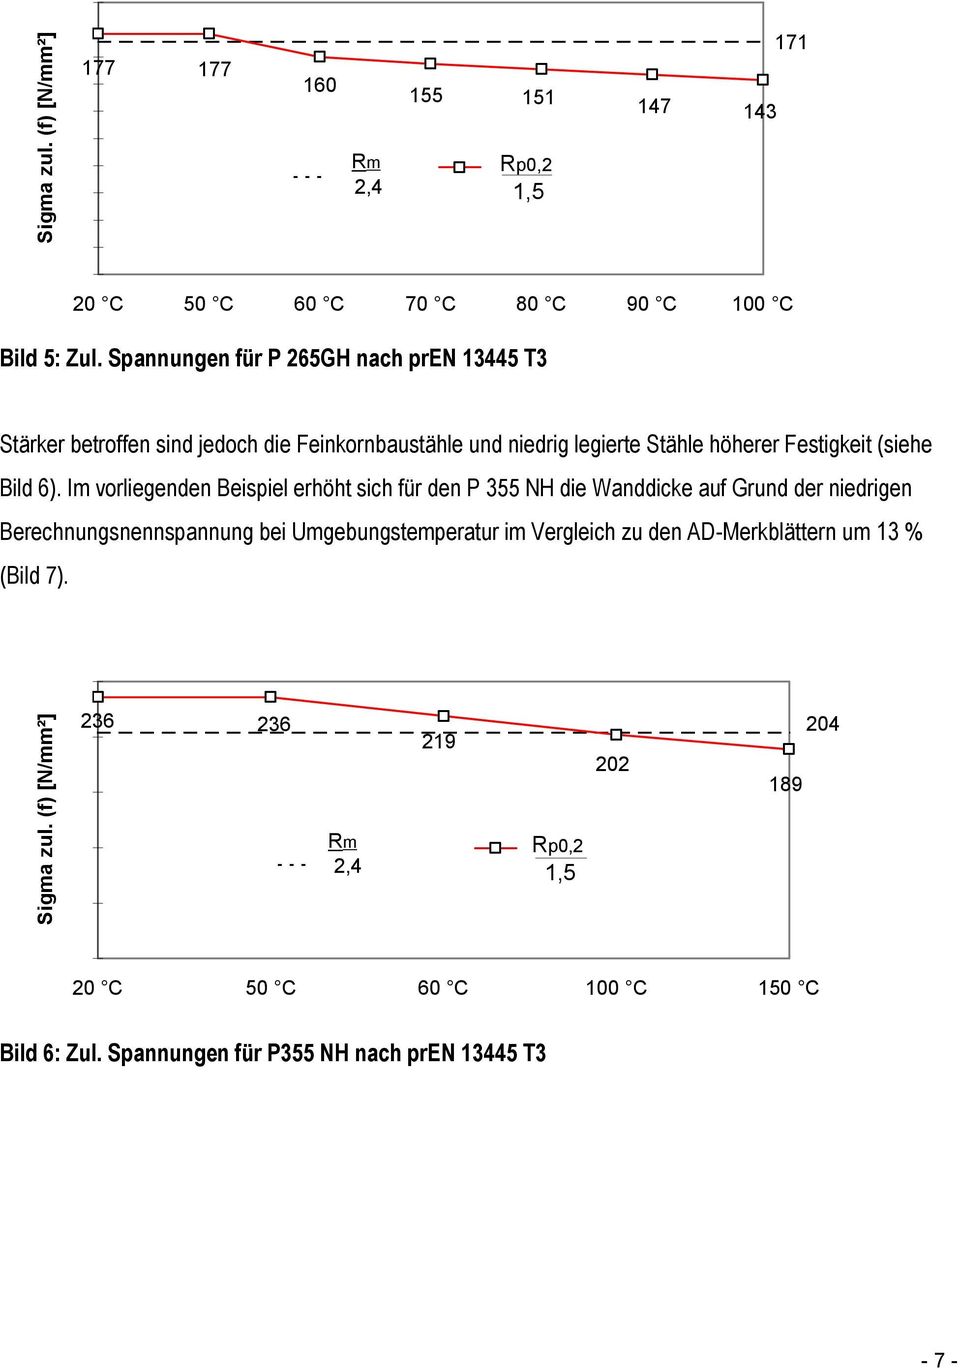 Im vorliegenden Beispiel erhöht sich für den P 355 NH die Wanddicke auf Grund der niedrigen Berechnungsnennspannung bei Umgebungstemperatur im Vergleich zu